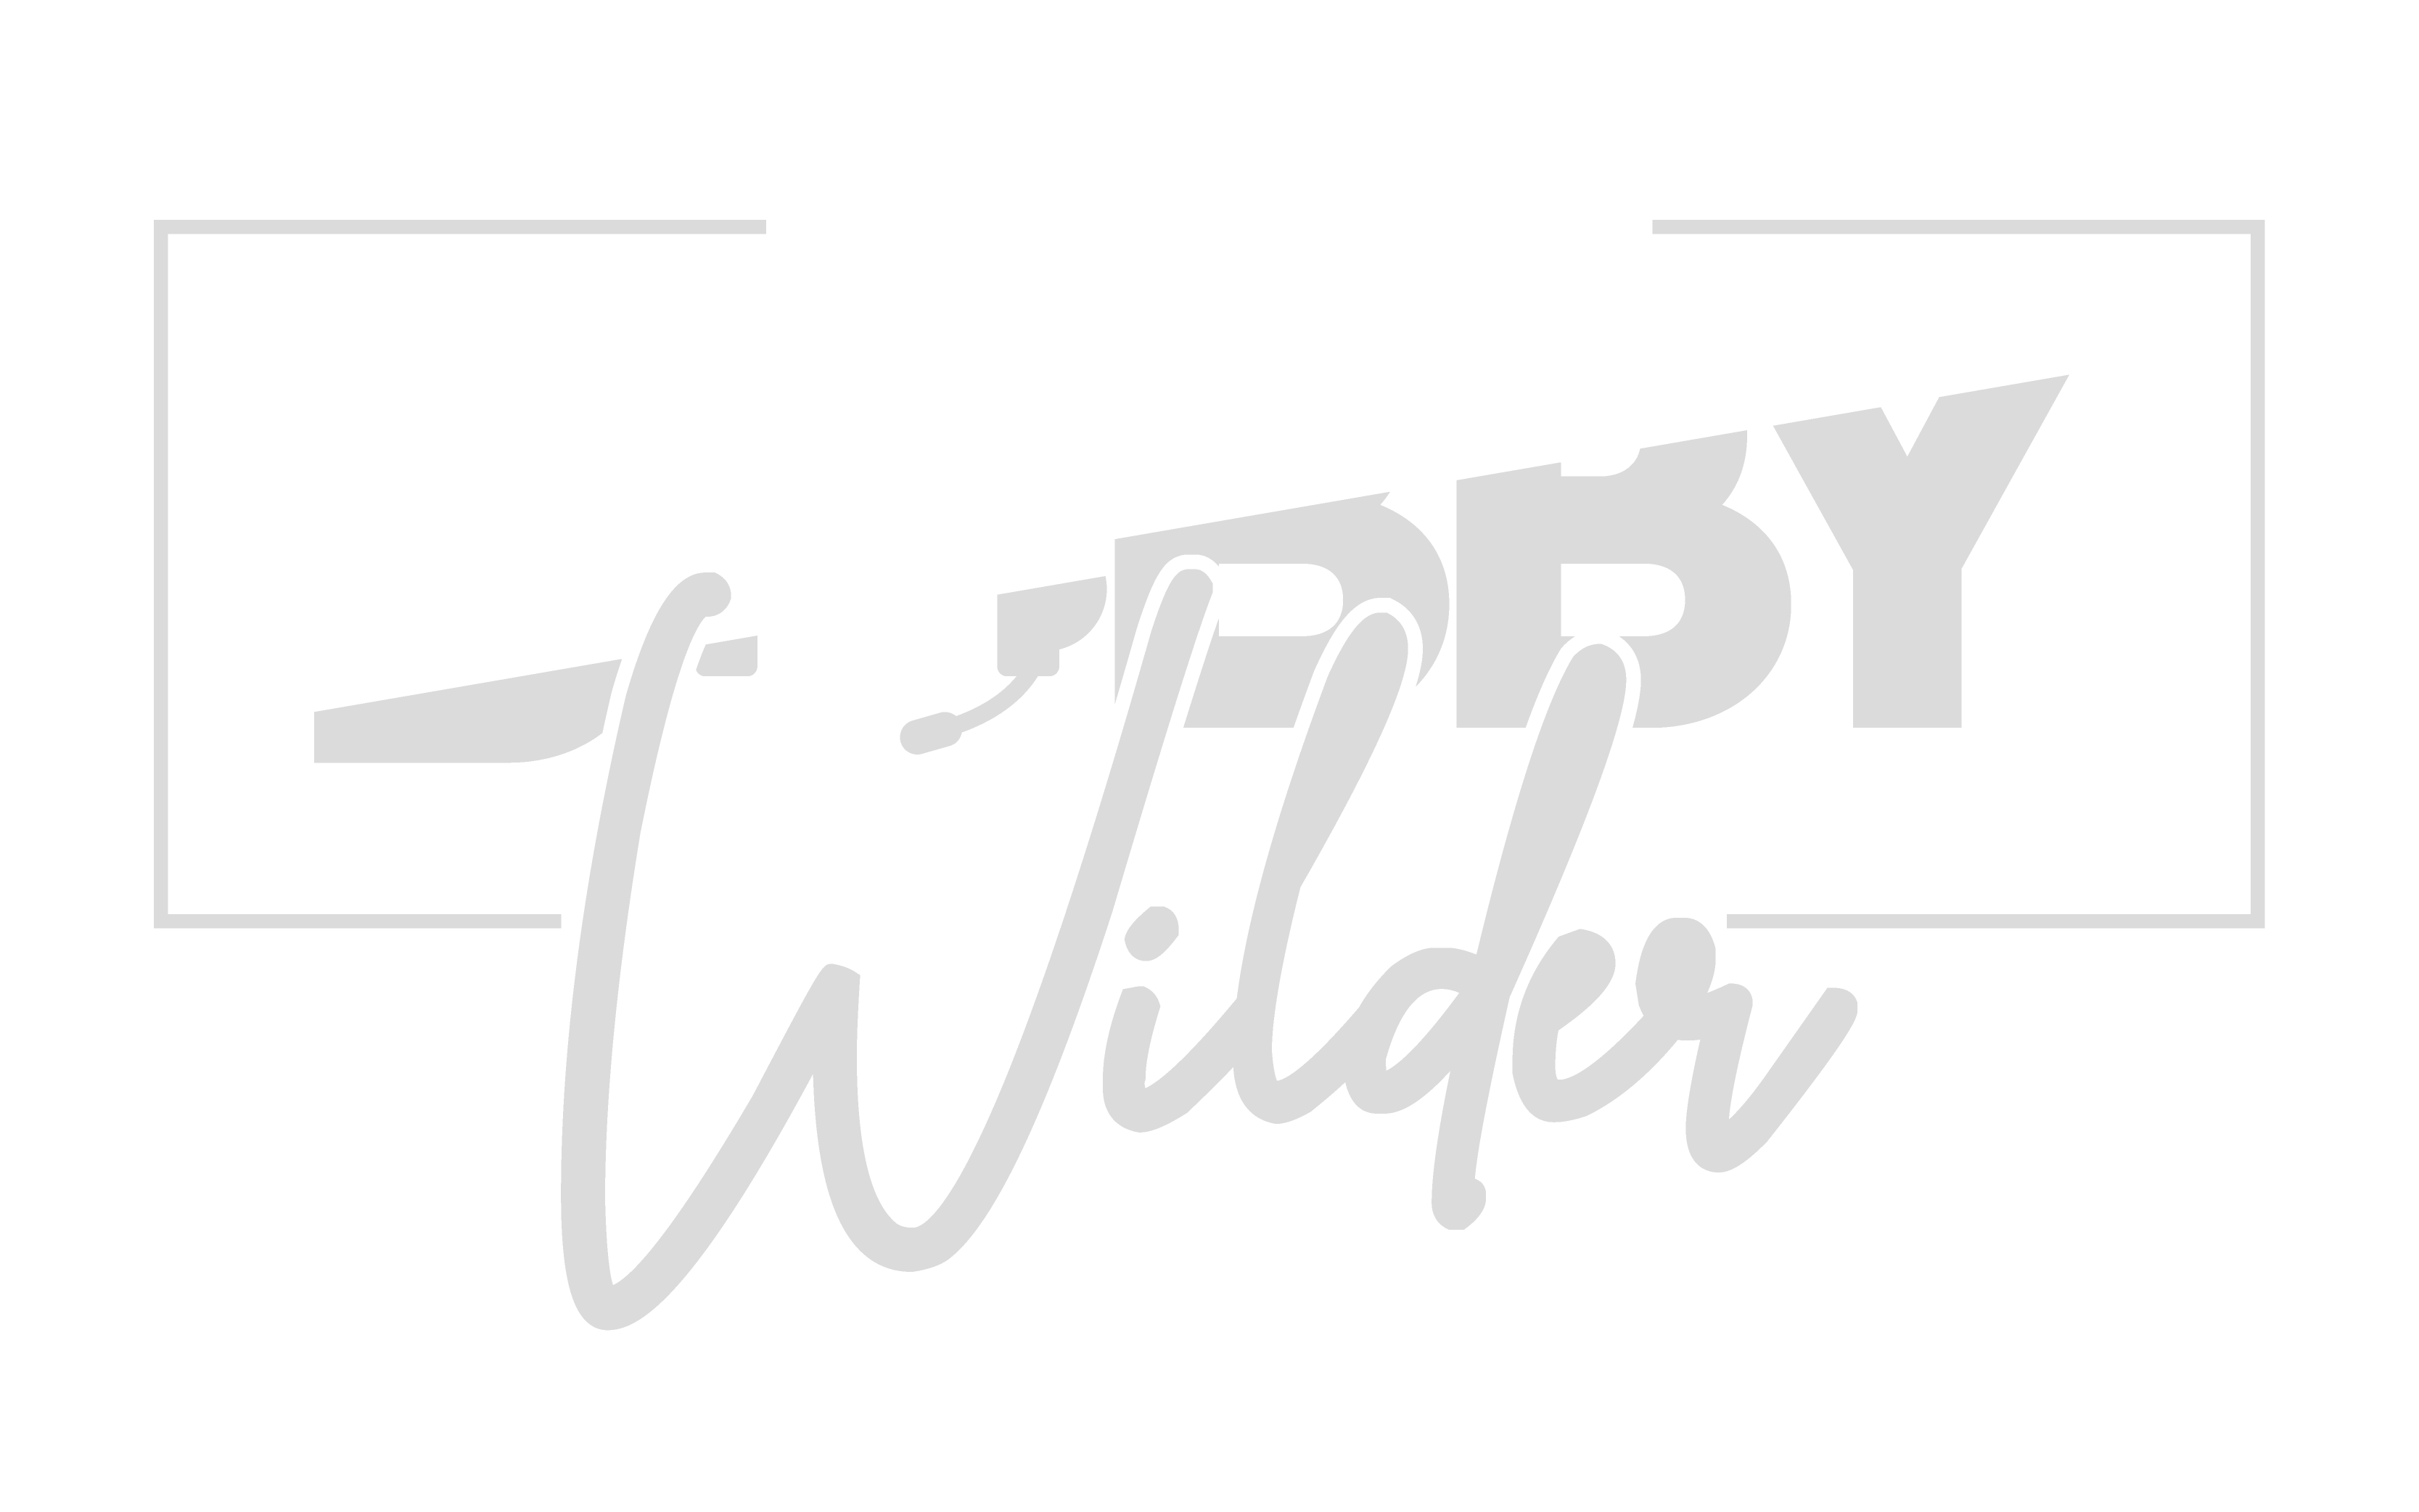 Coach Bobby Wilder